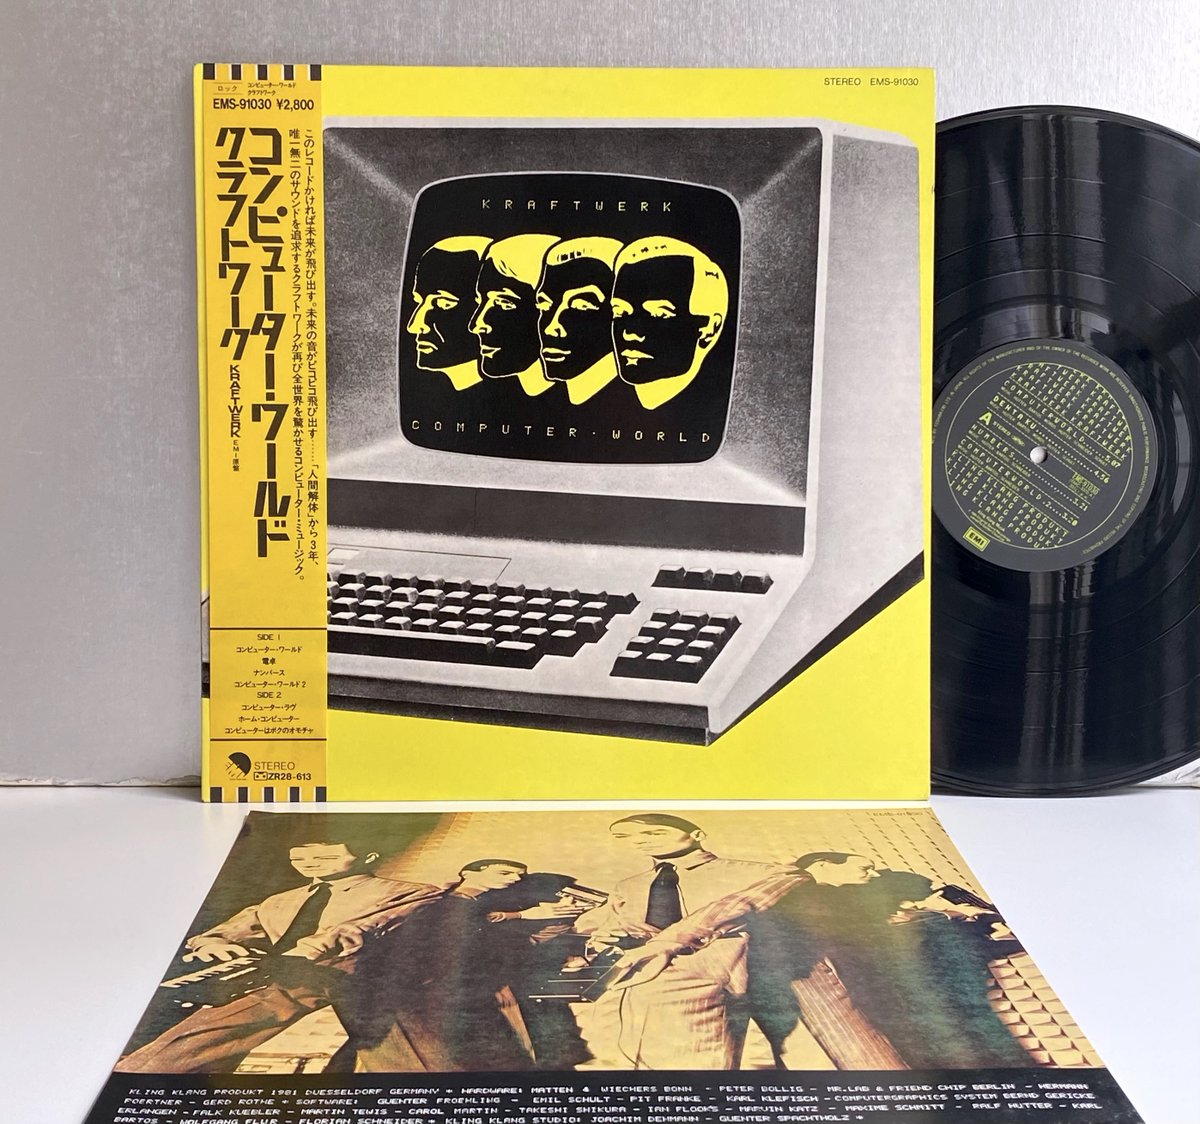 クラフトワーク
『コンピューター・ワールド』ＬＰ
1981 Japan
EMI，EMS-91030

#クラフトワーク #Kraftwerk #RalfHütter #FlorianSchneider #KarlBartos #FlorianSchneider #KlingKlang #electro #synthpop #technopop #krautrock #80smusic #vinylrecords #レコード💿🎶🤖💛